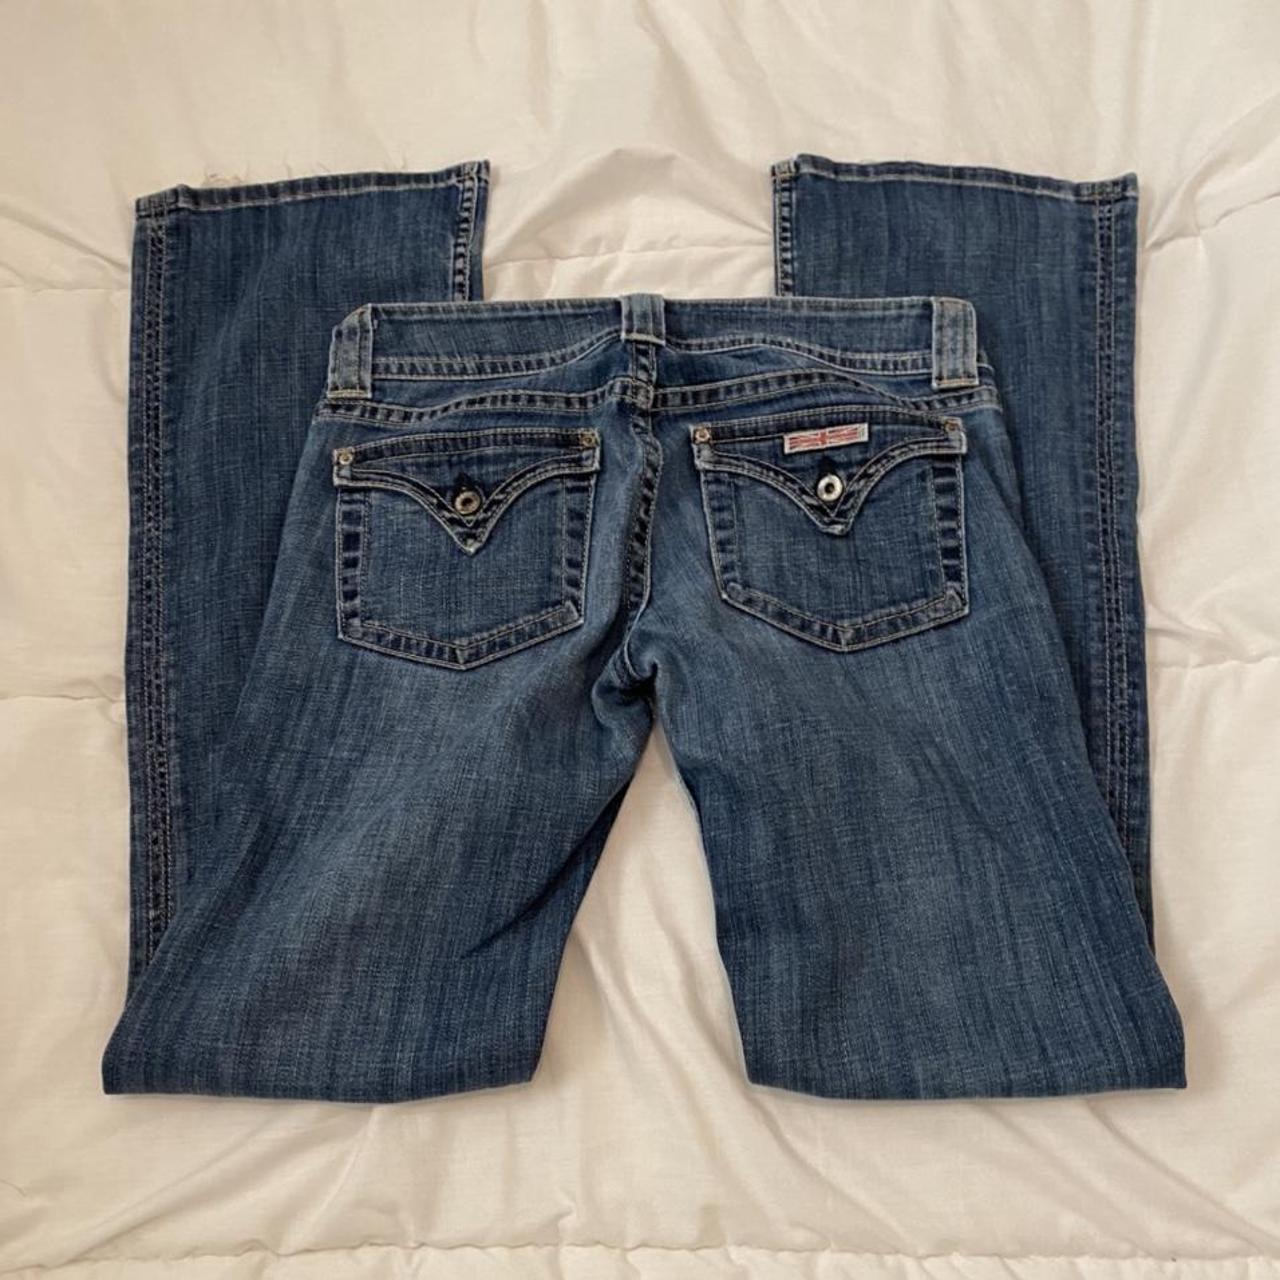 Low rise Hudson jeans! - low rise - boot cut -... - Depop